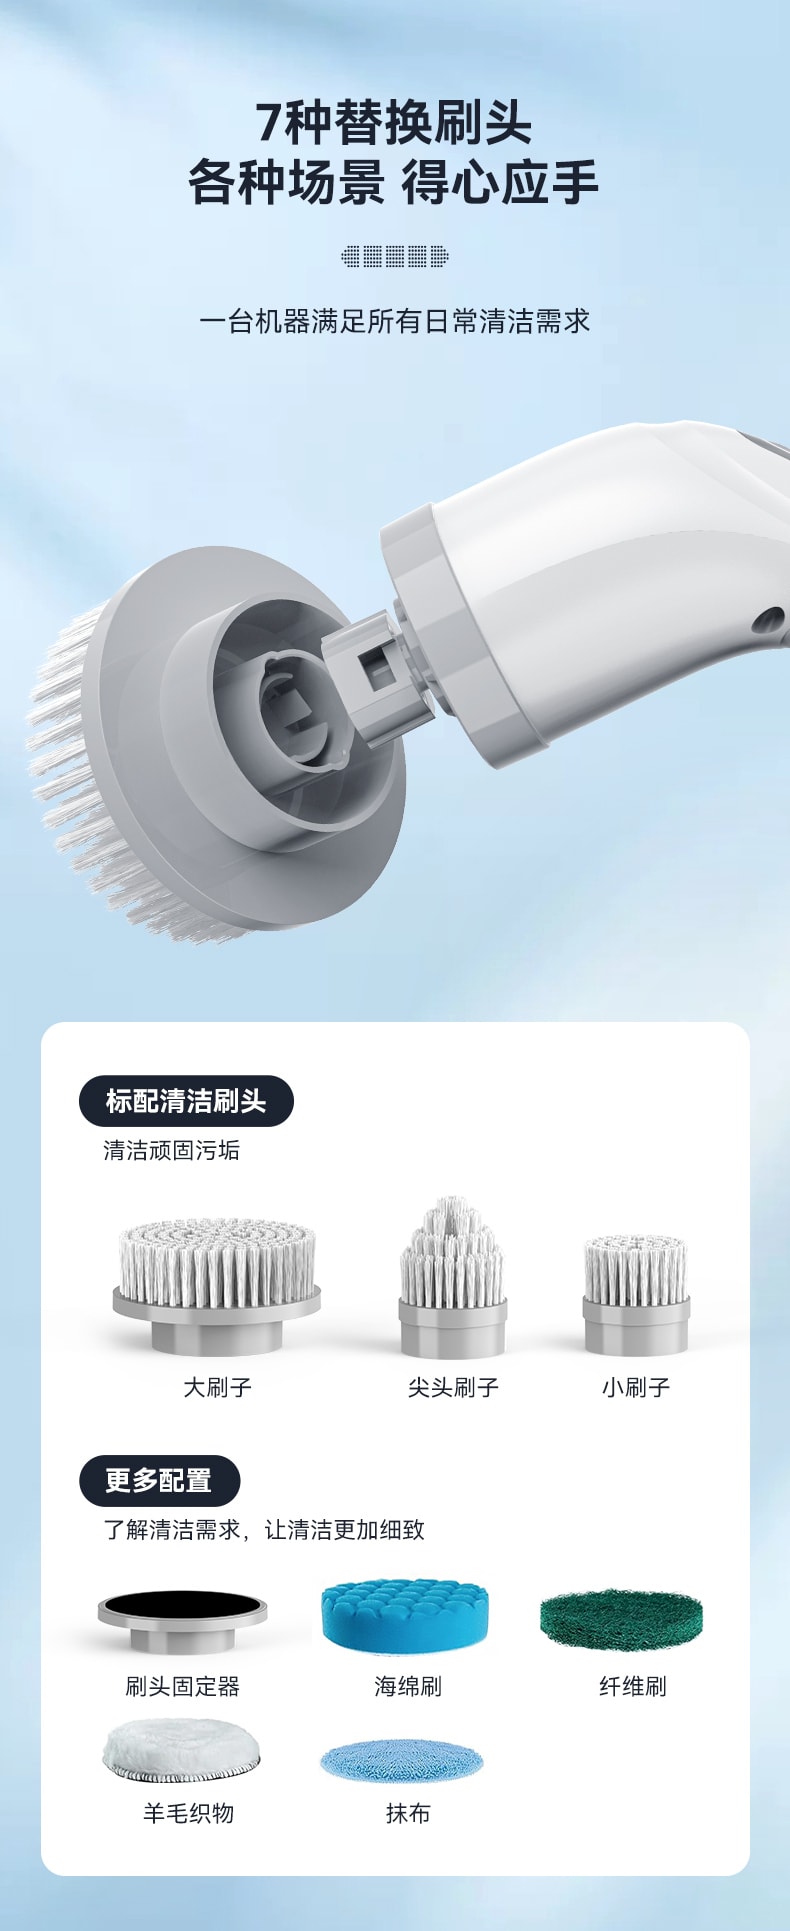 中国 MinHuang敏煌七合一多功能多头电动旋转洗涤器 白色 1件